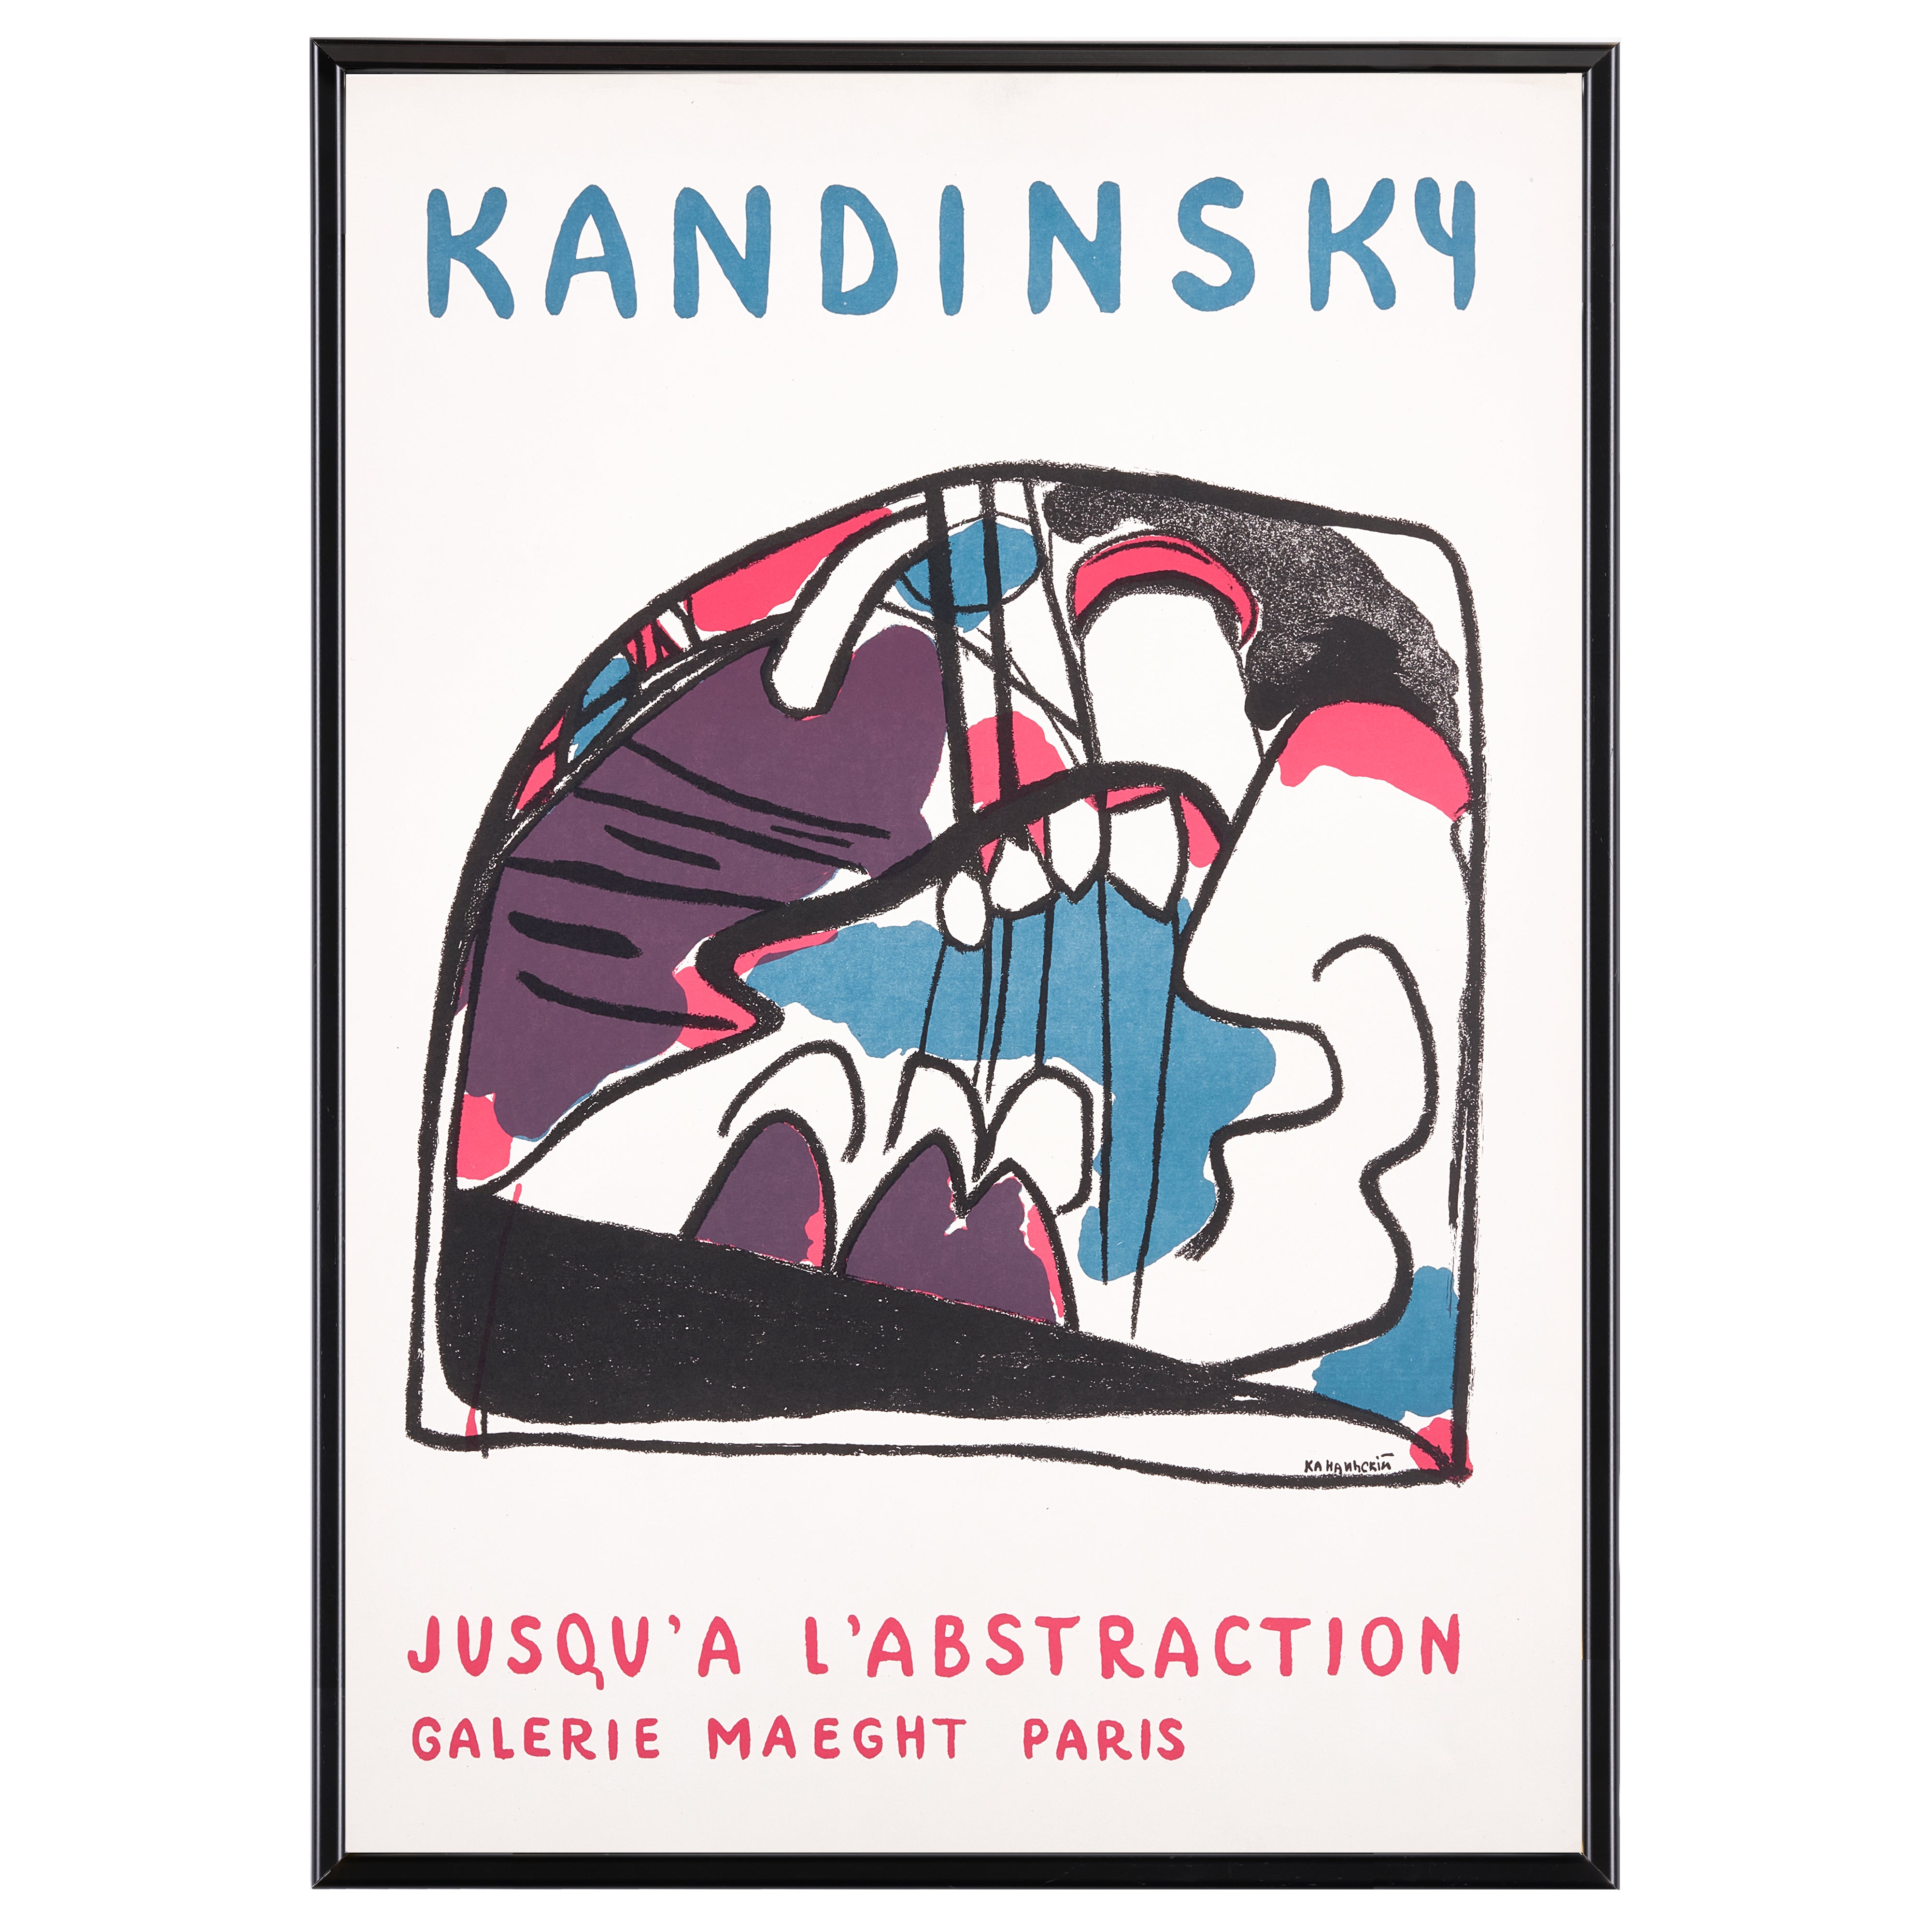 【限定10枚】JUSQU'A L'ABSTRACTION - GALERIE MAEGHT PARIS 1960-1970s / ワシリー・カンディンスキー